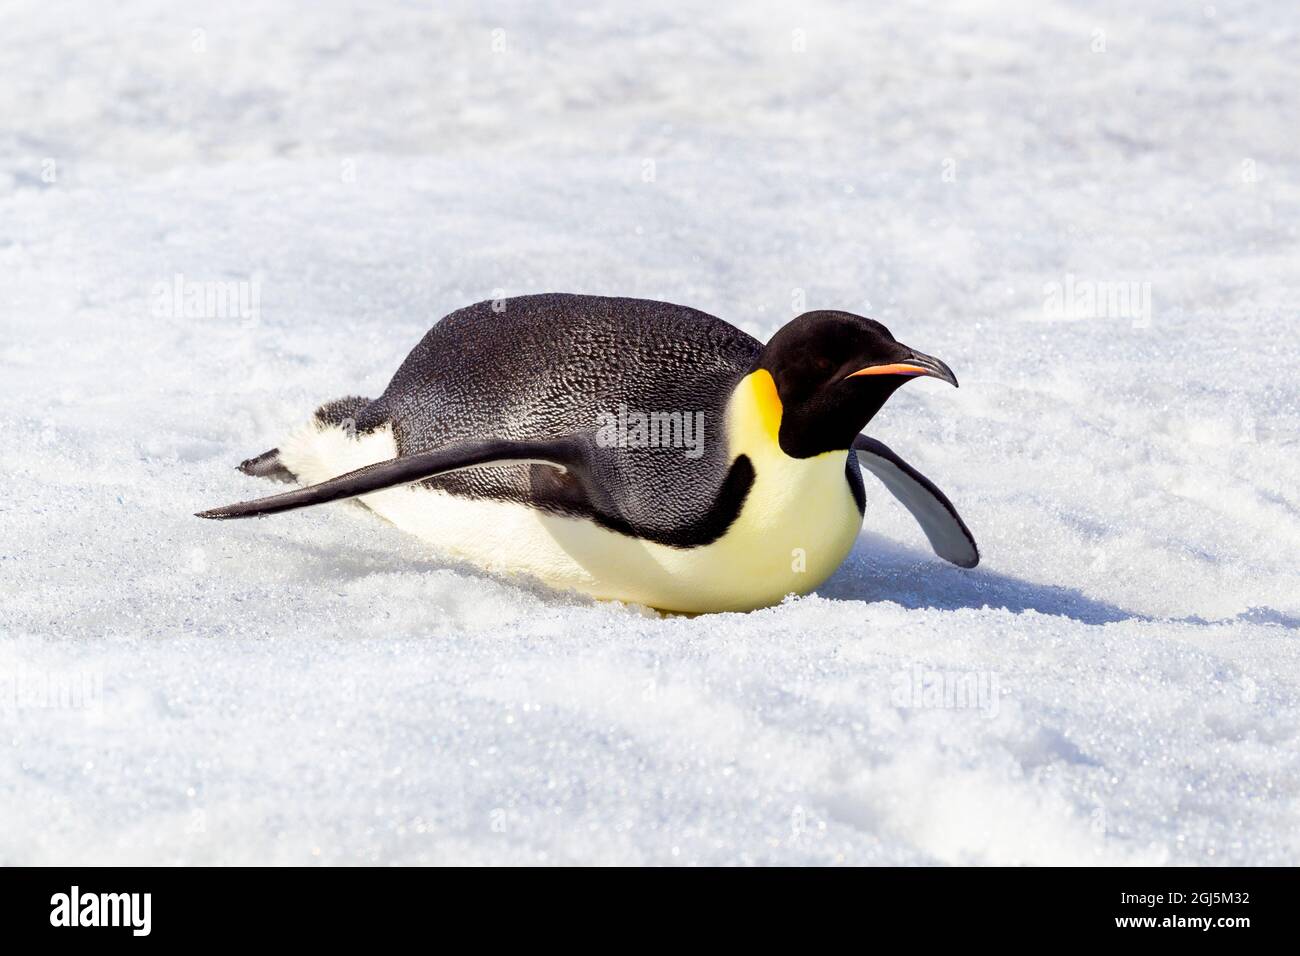 Antartide, Snow Hill. Un pinguino imperatore si spinge sul ventre con i piedi per risparmiare energia. Foto Stock